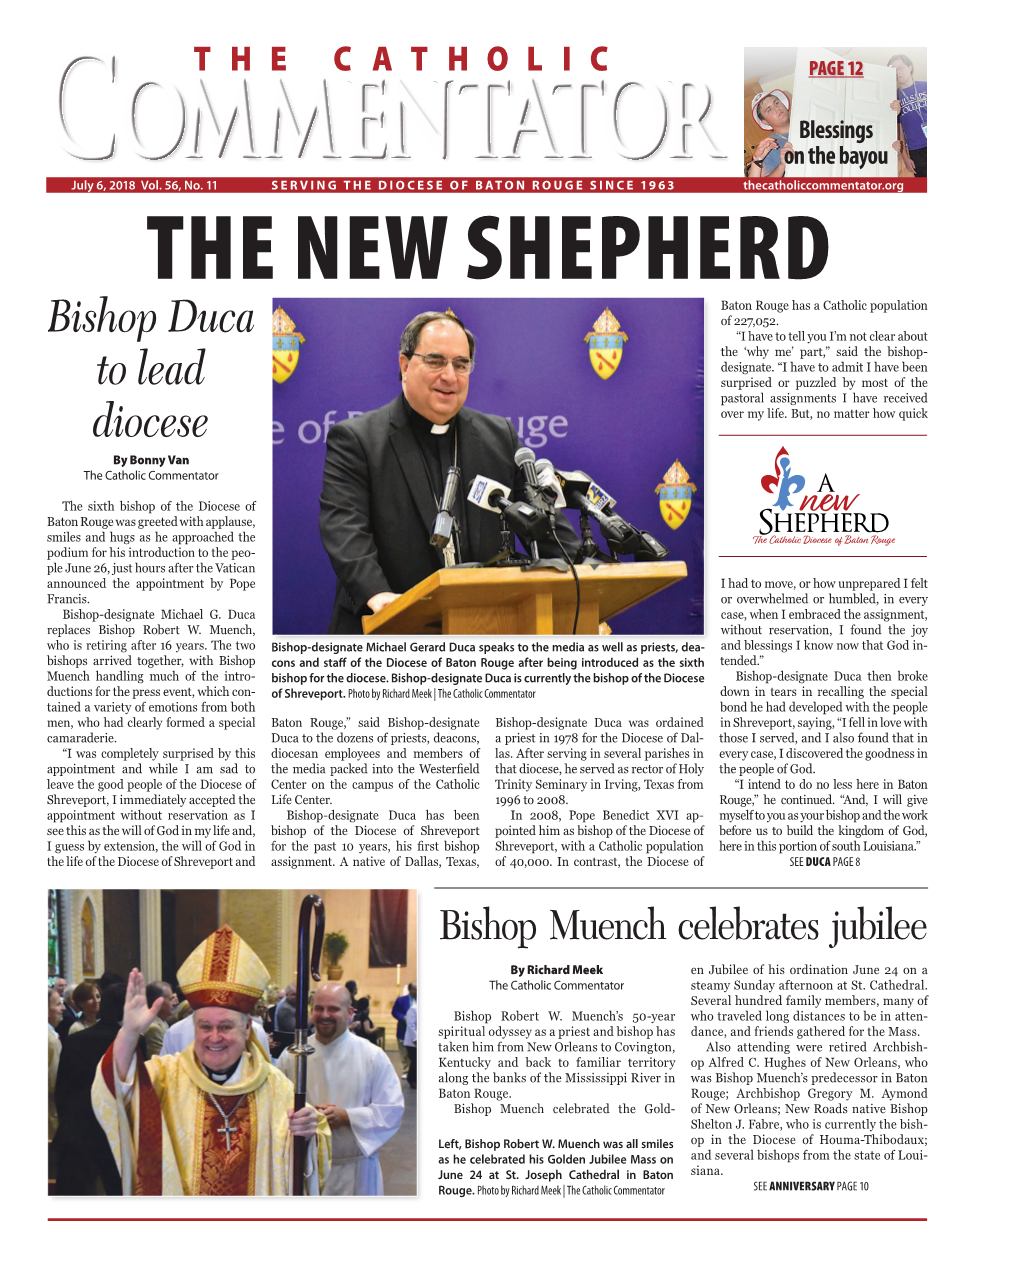 Bishop Duca to Lead Diocese